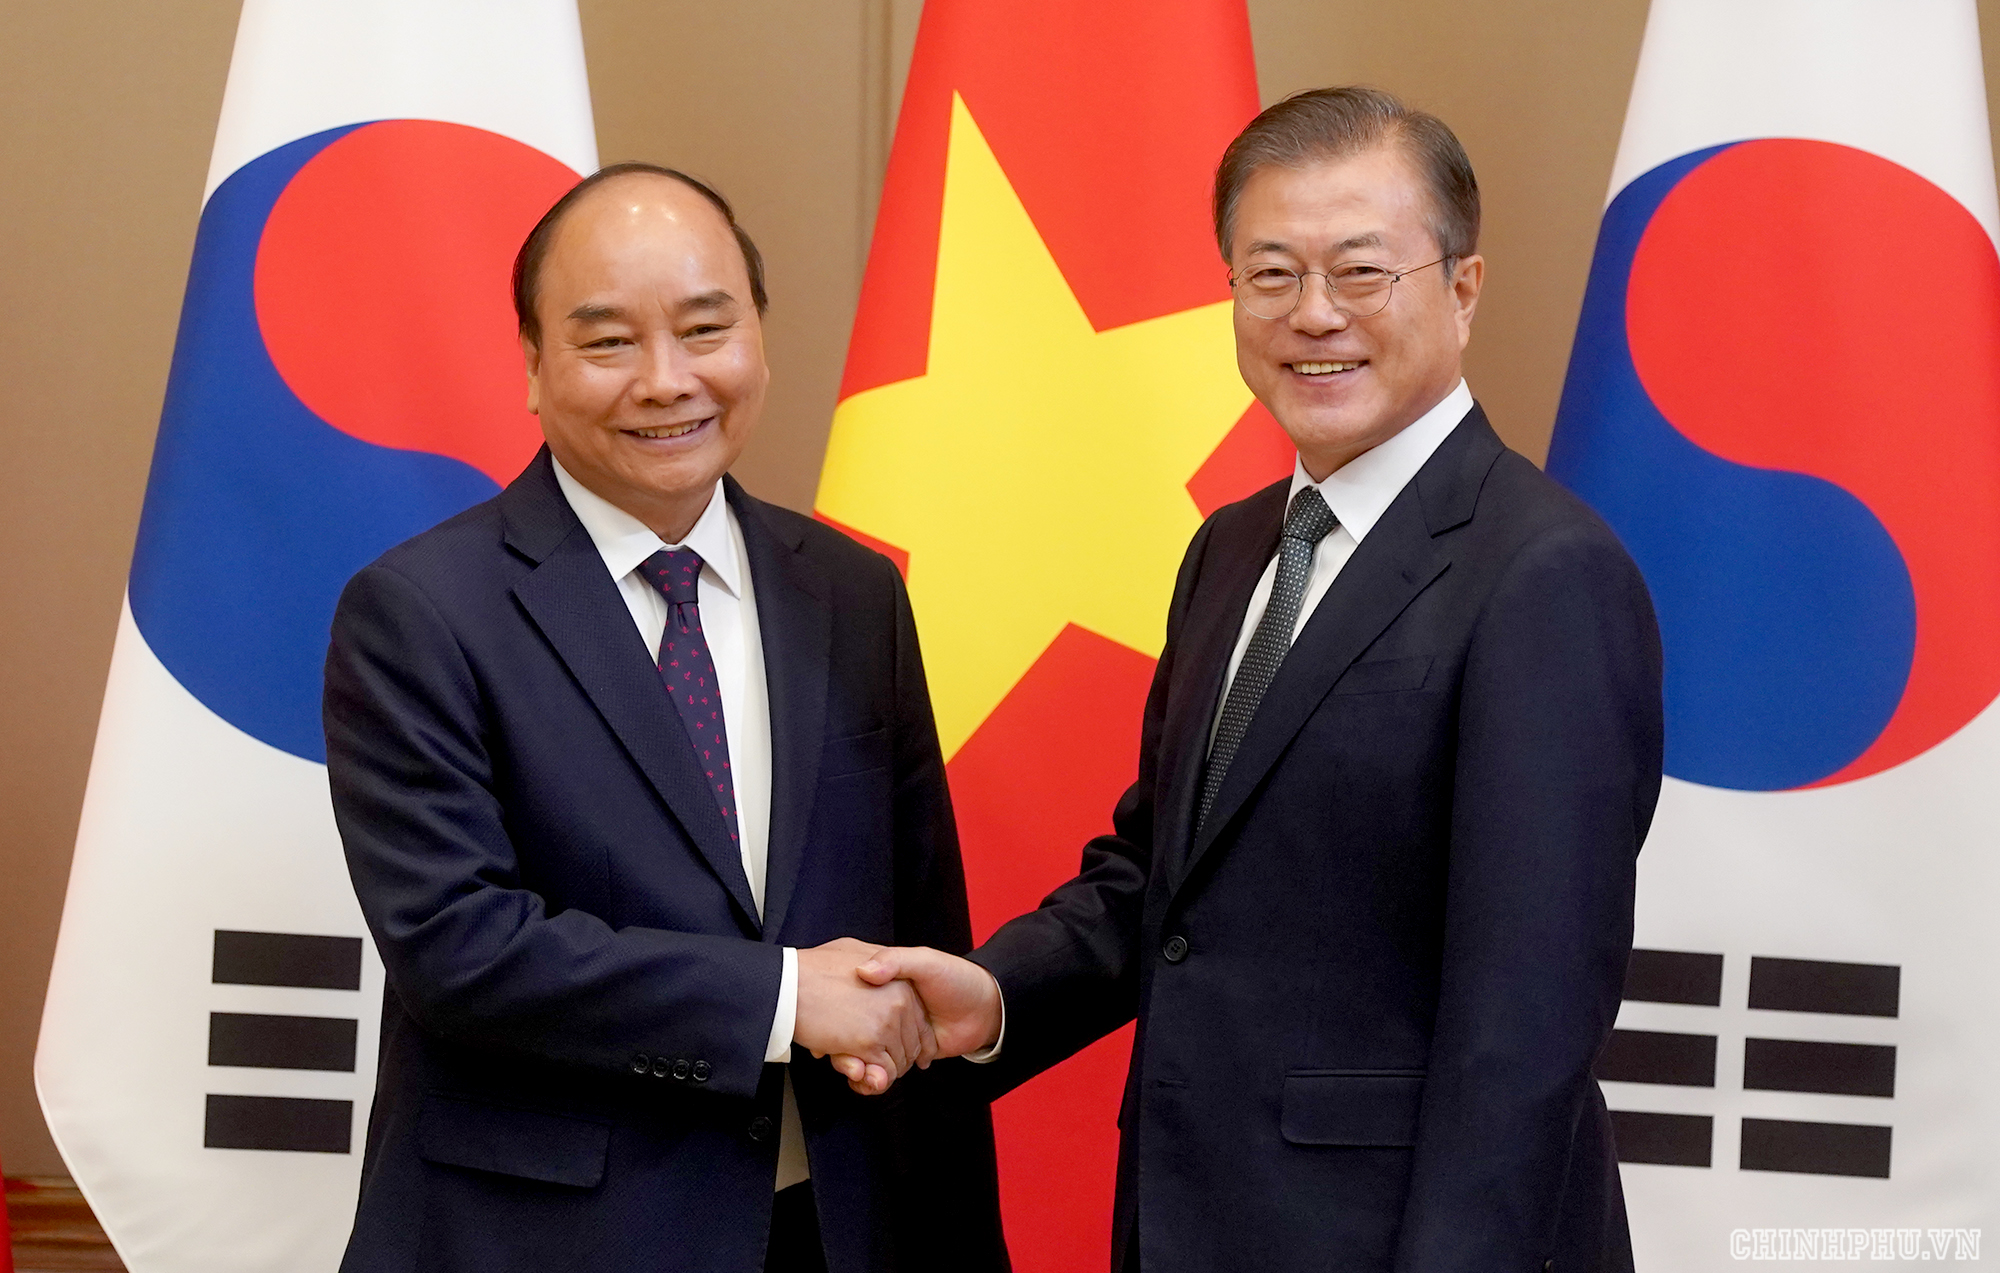 Tổng thống Hàn Quốc Moon Jae-in: Tổng thống Hàn Quốc Moon Jae-in đã gây ấn tượng mạnh với những nỗ lực của ông trong việc duy trì hòa bình và hợp tác châu Á. Bằng tinh thần và nỗ lực của mình, ông đã mang lại niềm tin cho người dân Hàn Quốc cũng như trên toàn bộ khu vực về việc xây dựng và giữ gìn một cộng đồng Châu Á mạnh mẽ, đoàn kết và phát triển.